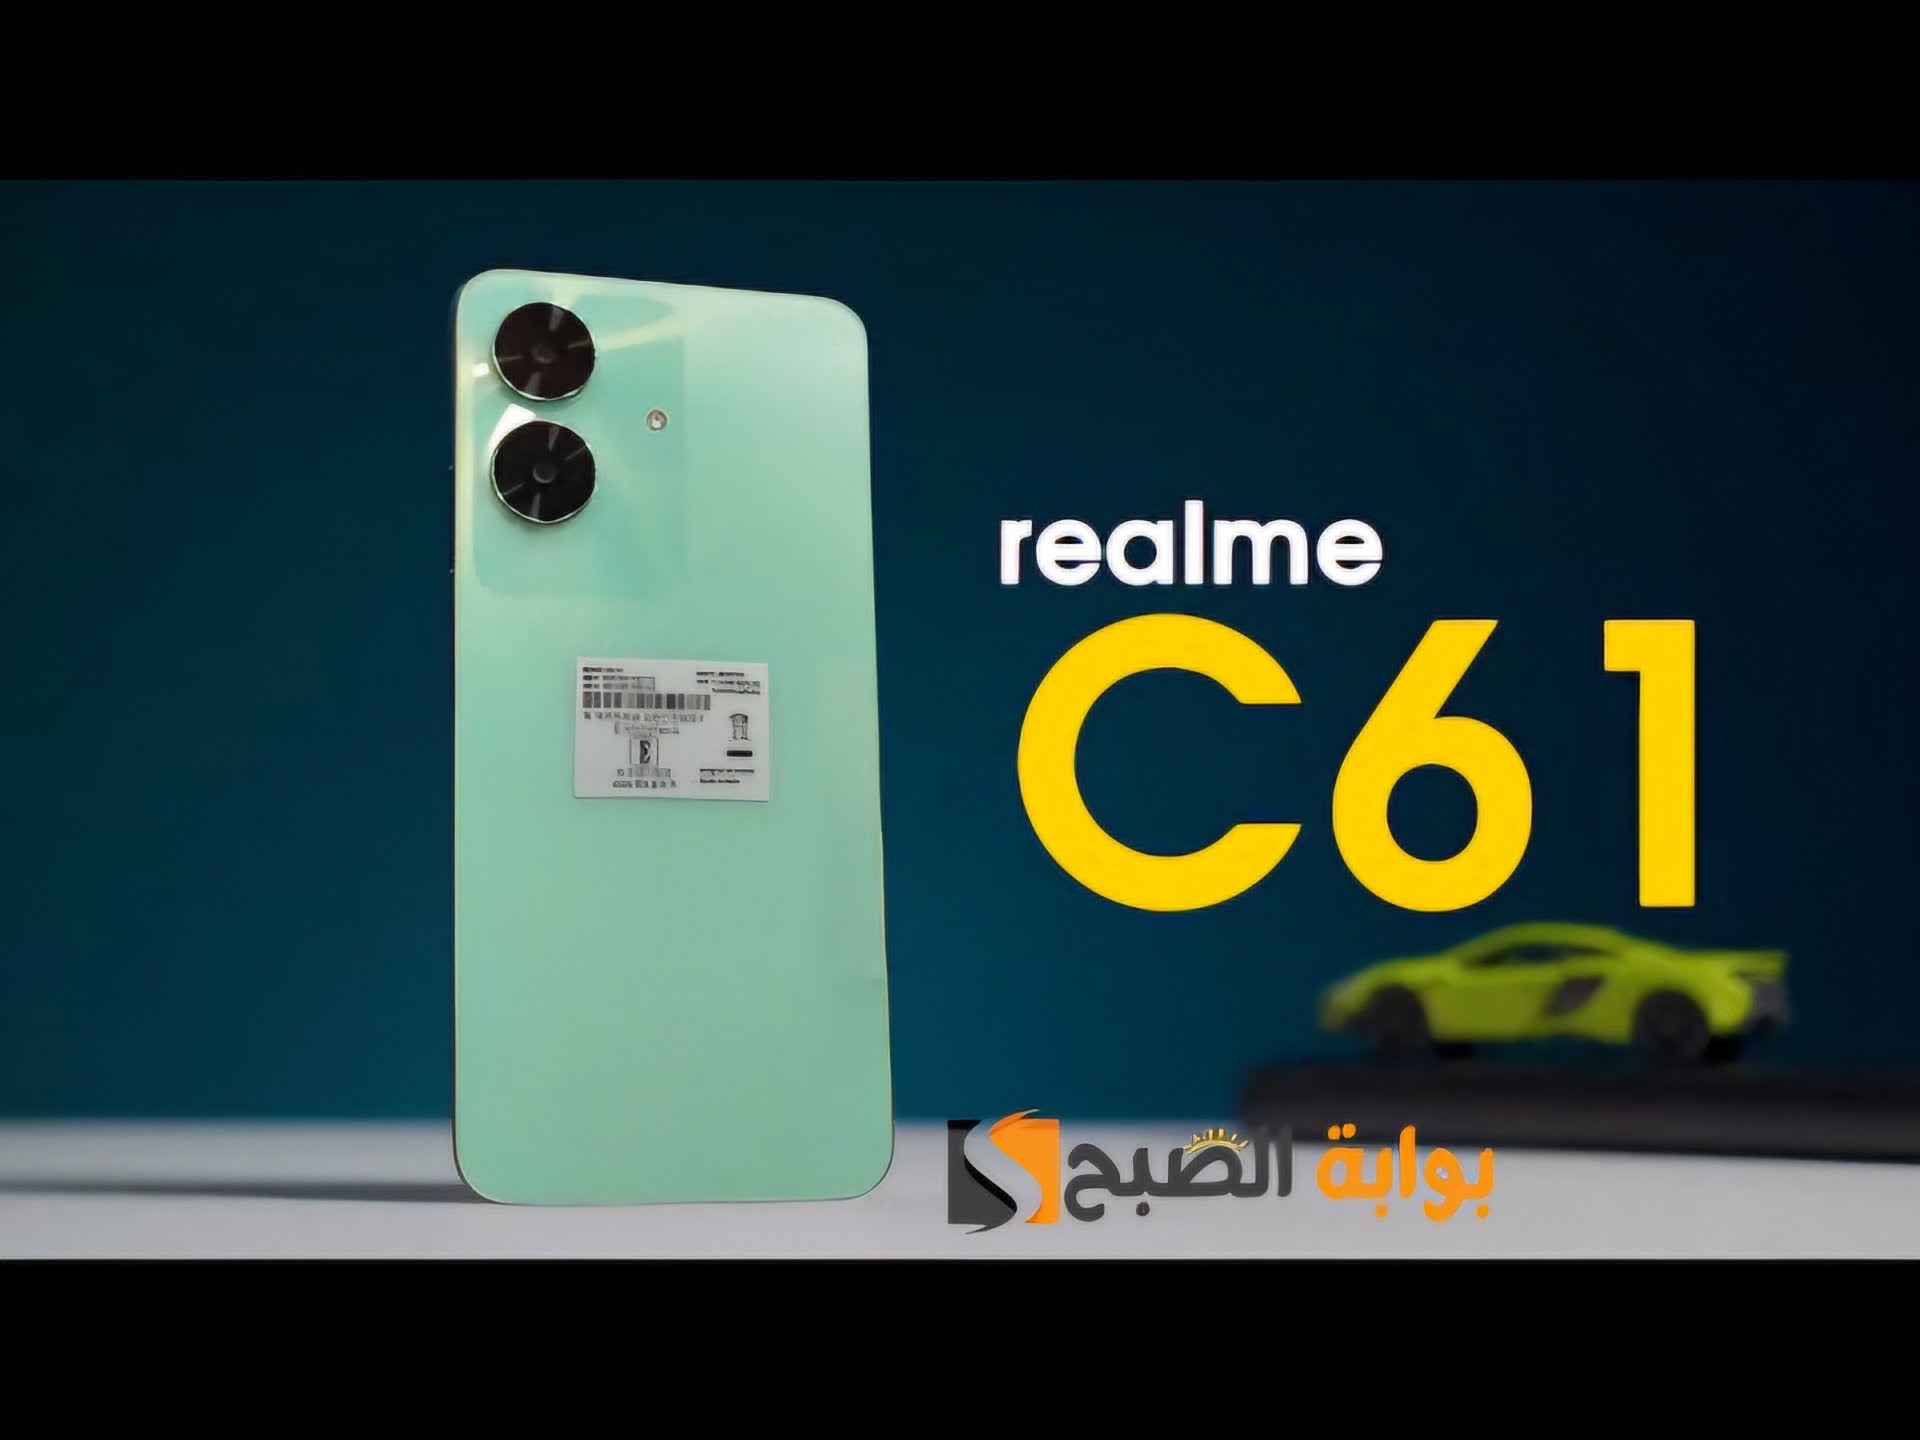 رسمياَ Realme C61 – الهاتف الاقتصادي المقاوم للغبار والماء بتقييم IP54